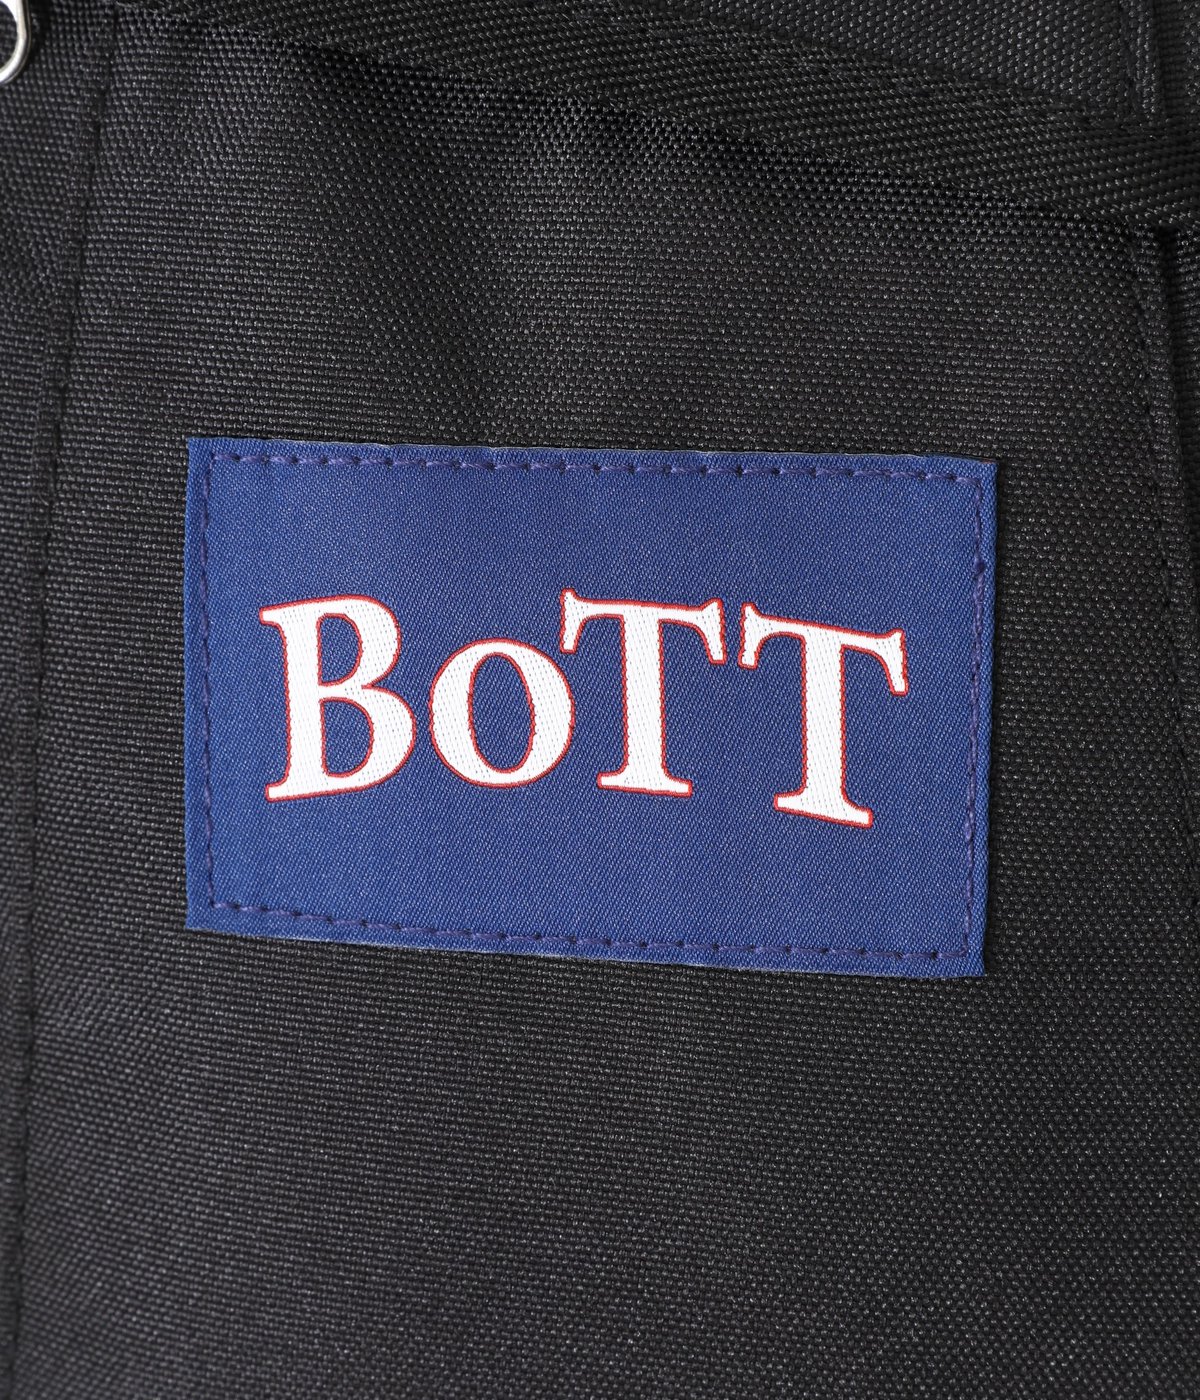 BoTT Sport Backpack Blue